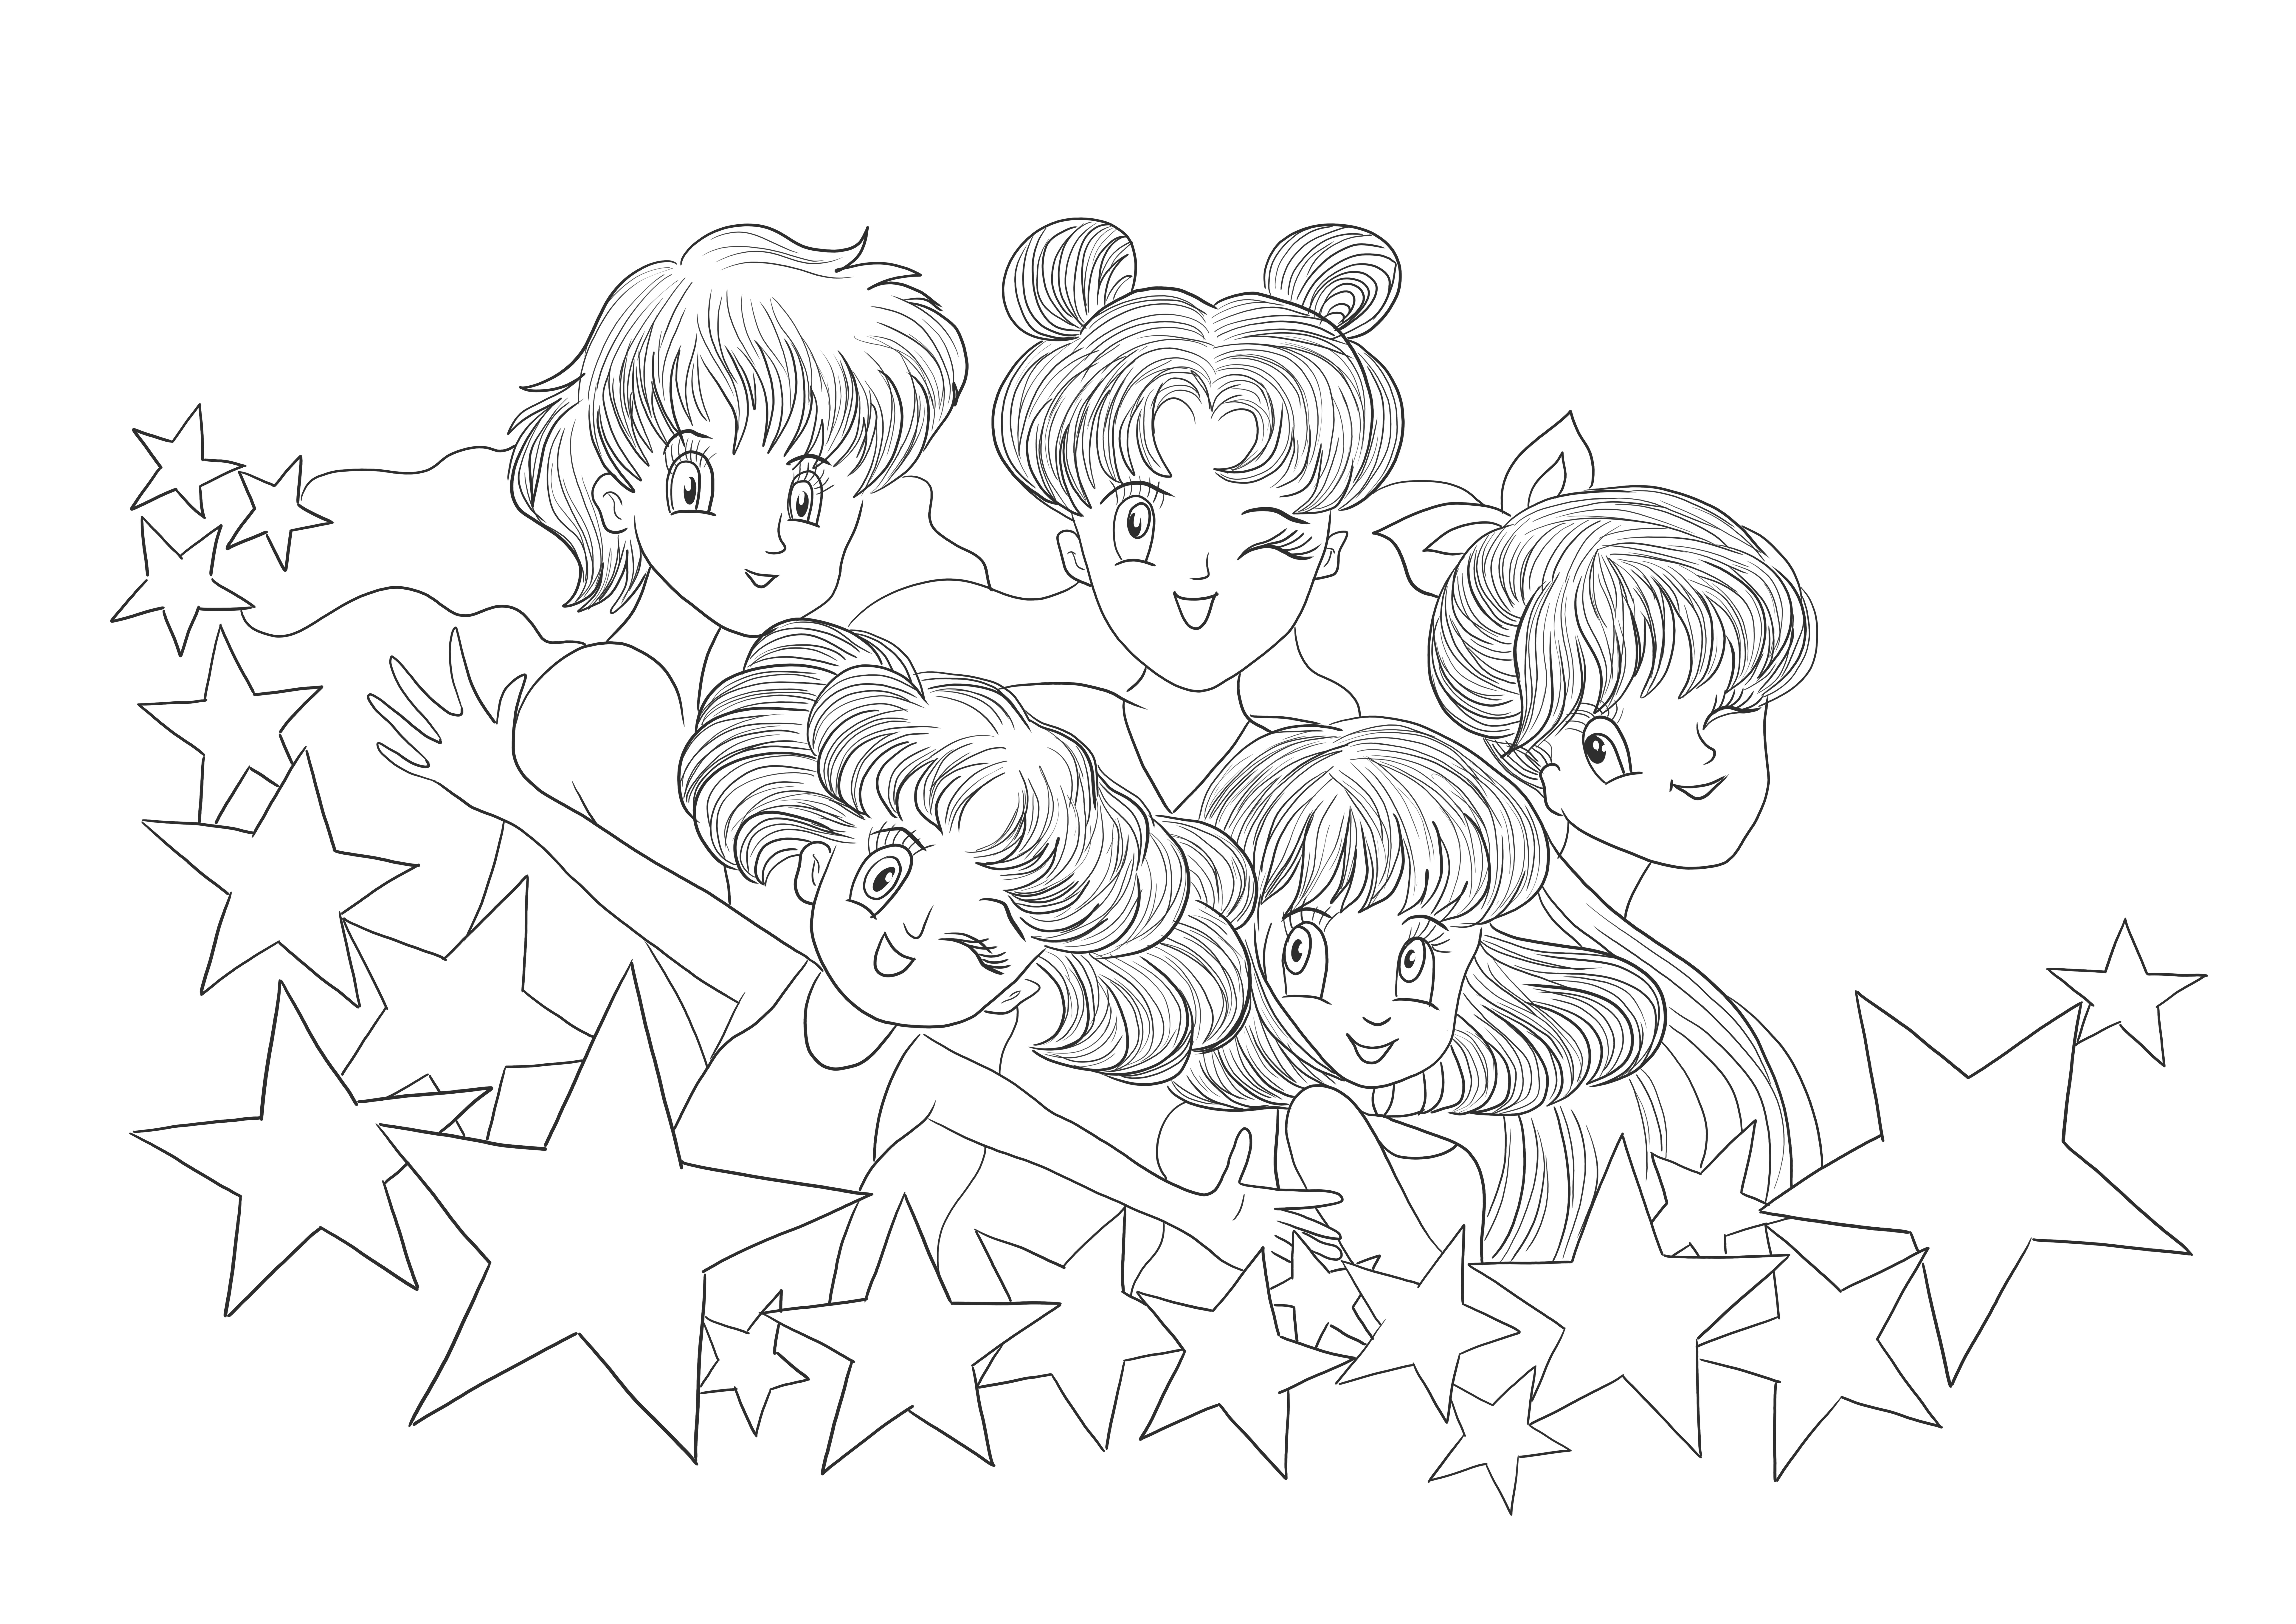 Ingyenesen nyomtatható Sailor Moon képek letöltéséhez és kinyomtatásához a gyerekek számára.